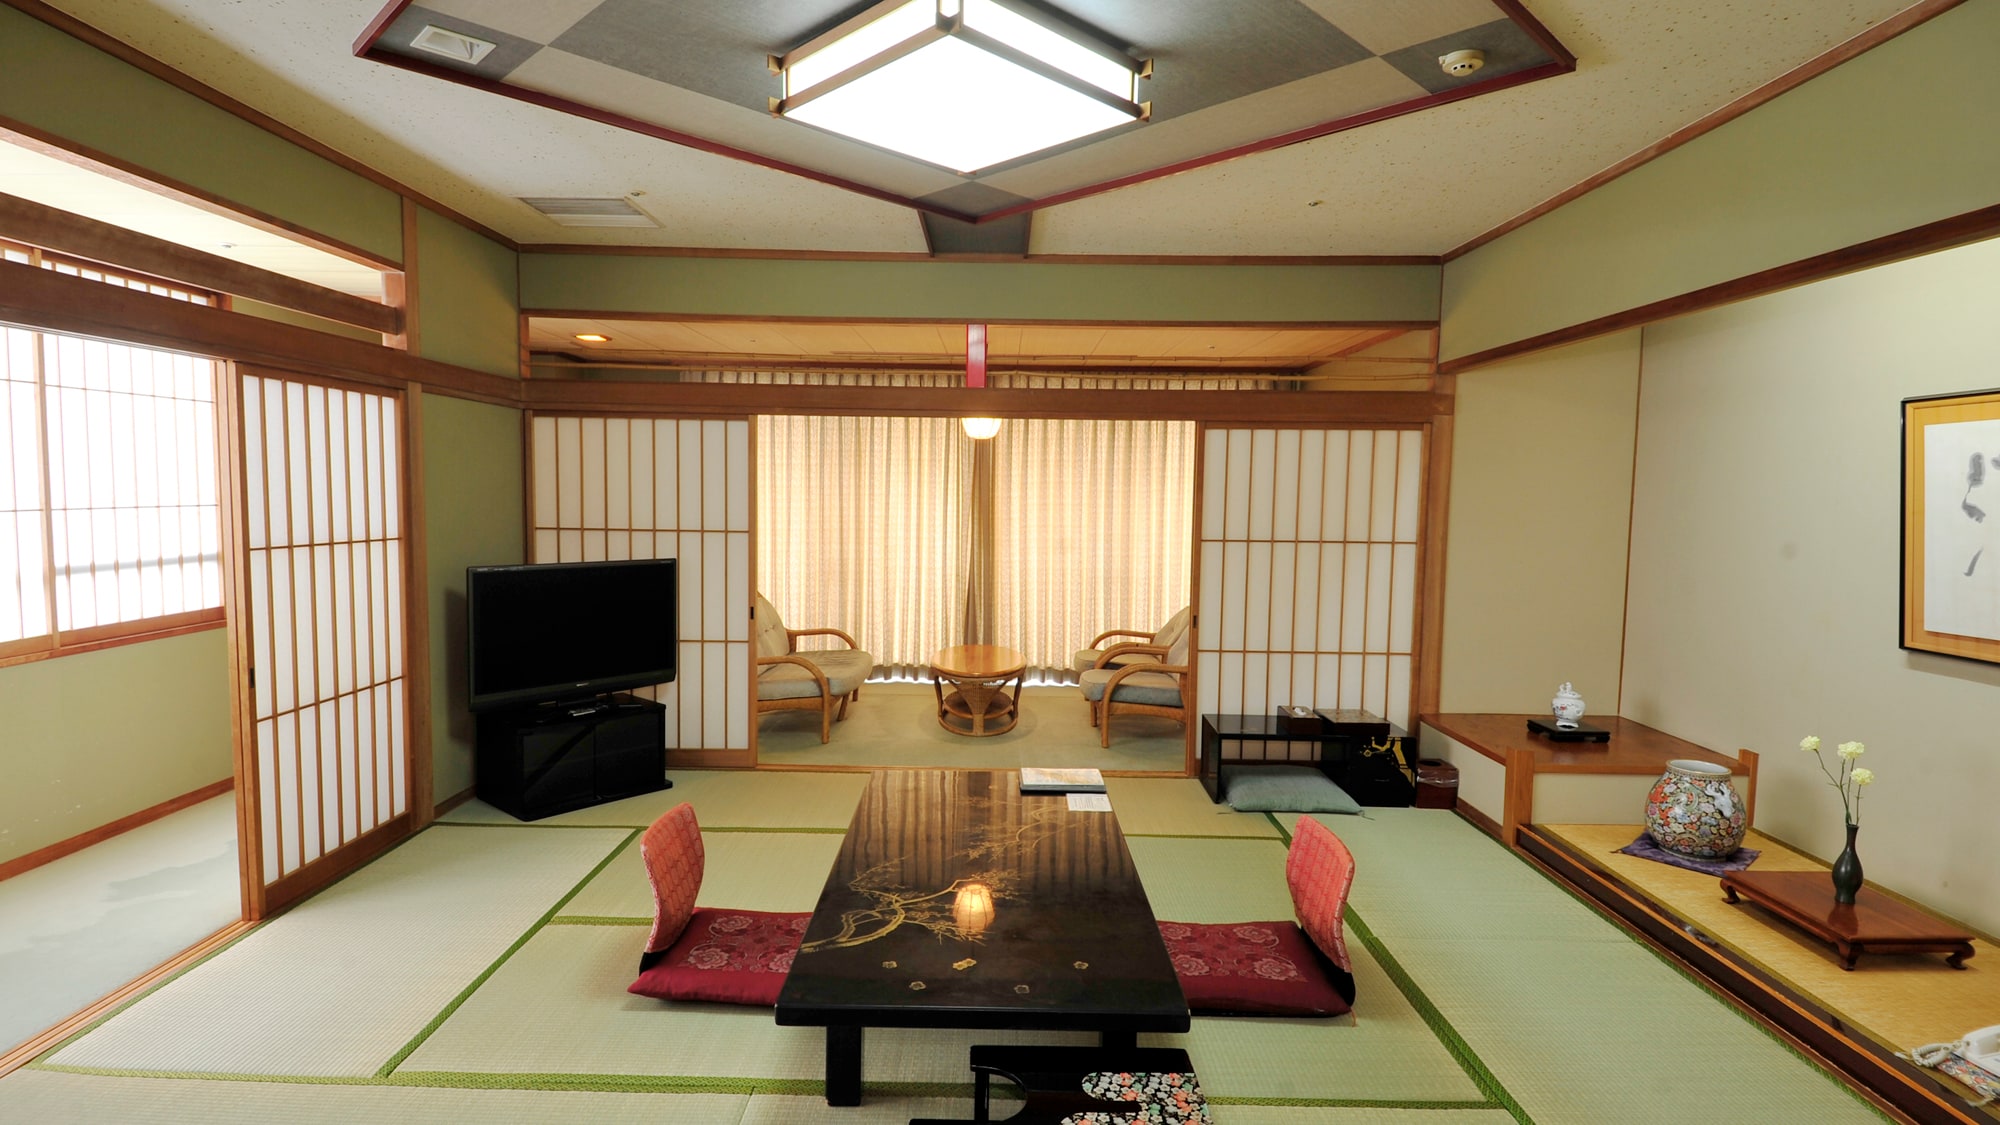 ●이면의 창유리로부터 야경을 바라볼 수 있는 특별 일본식 방. 느긋하게 넓은 인연도 완비